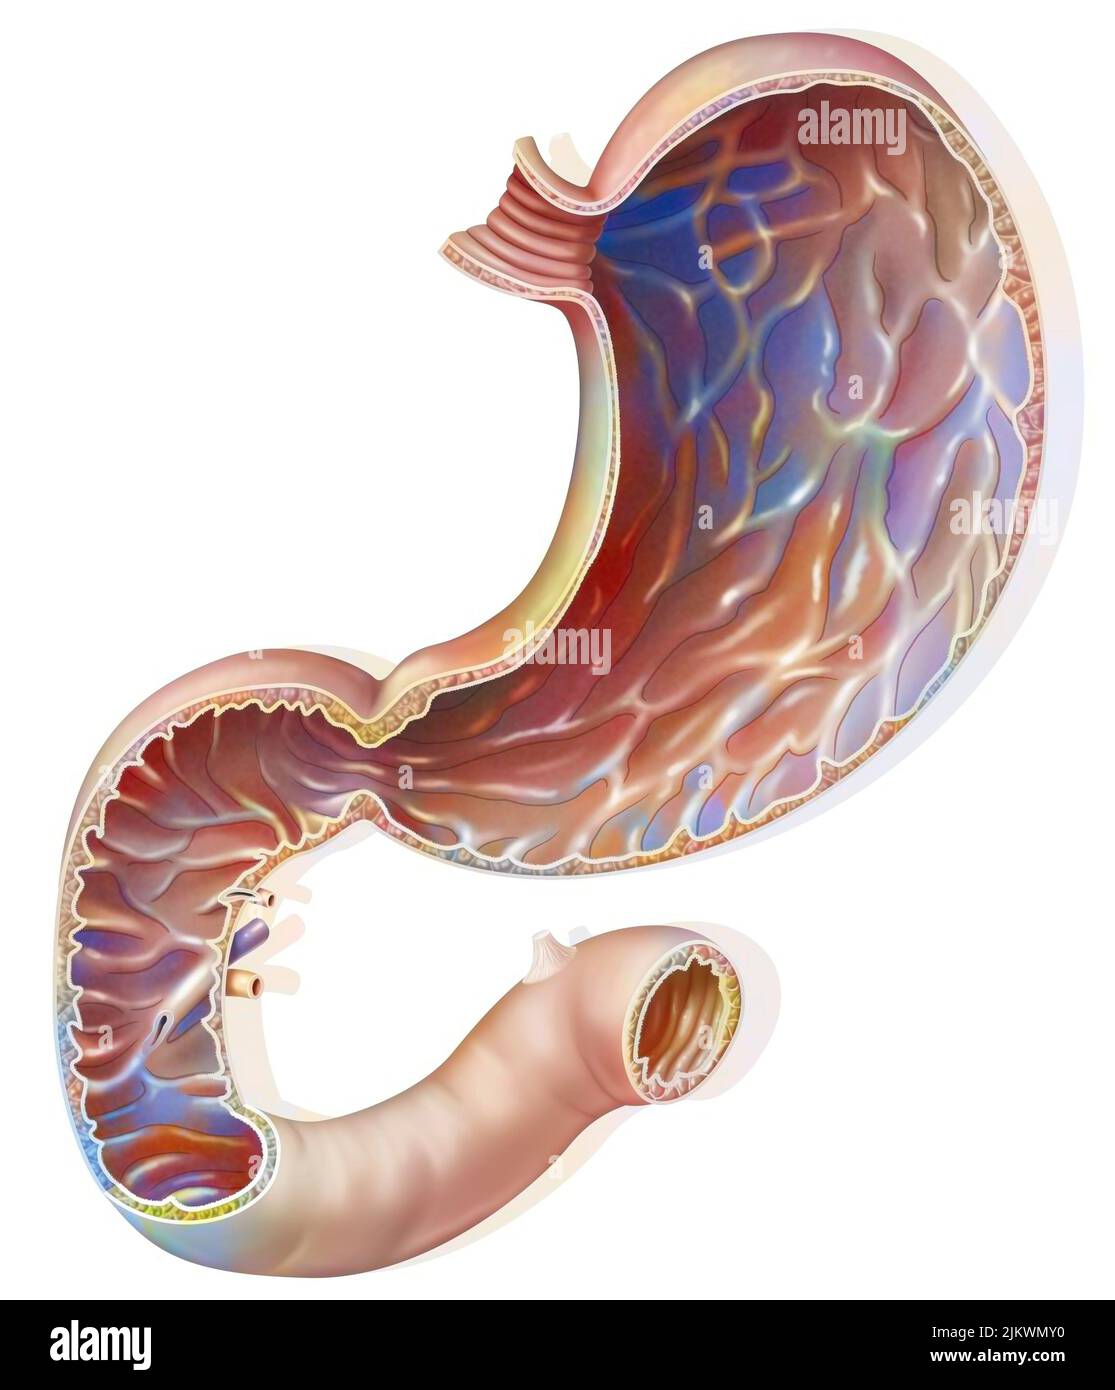 Sezione dello stomaco e del duodeno con la mucosa gastrica. Foto Stock